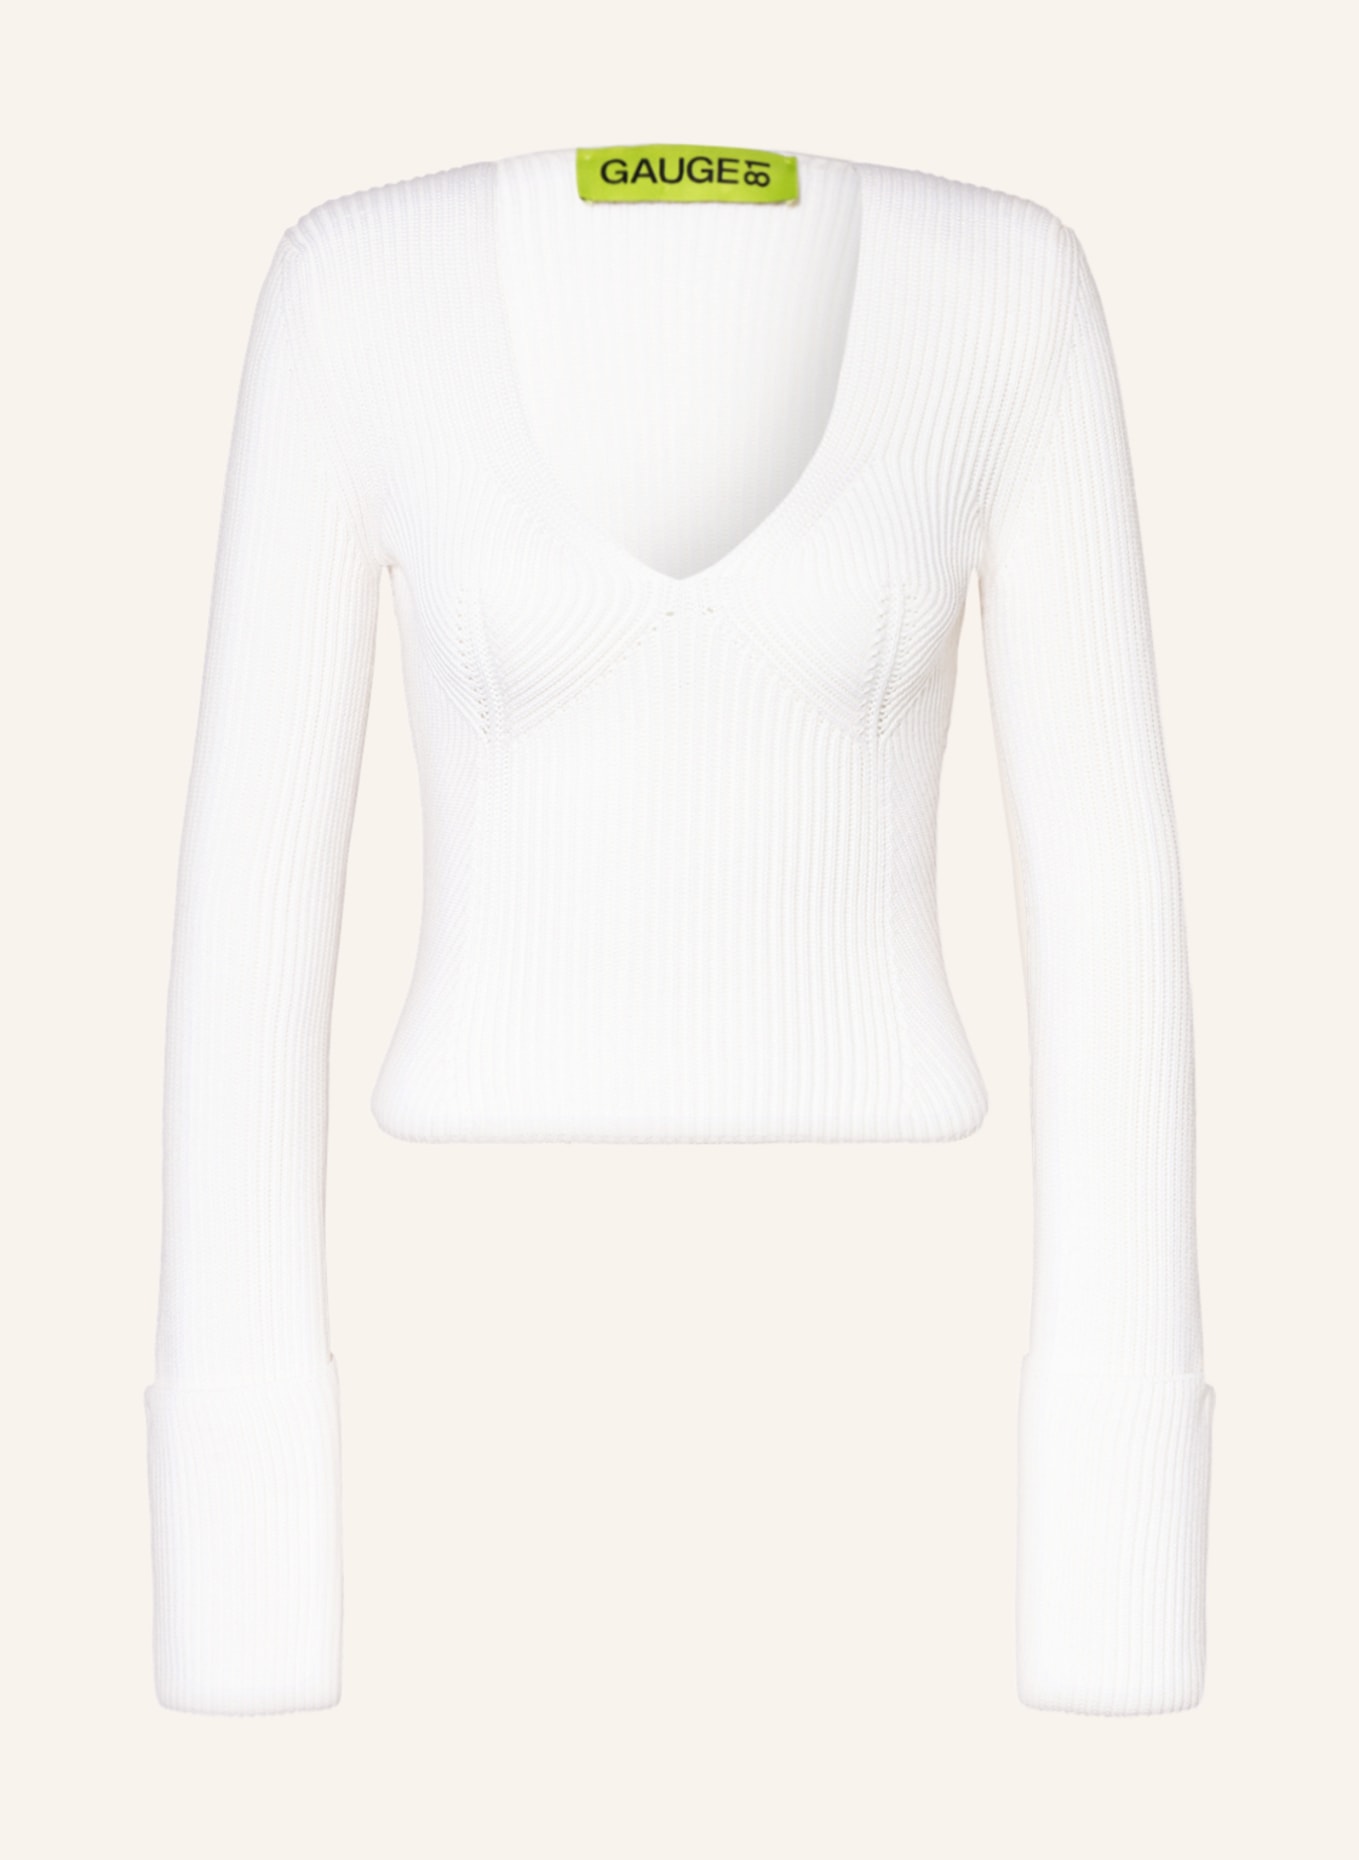 GAUGE81 Sweater TASHIR, Color: ECRU (Image 1)